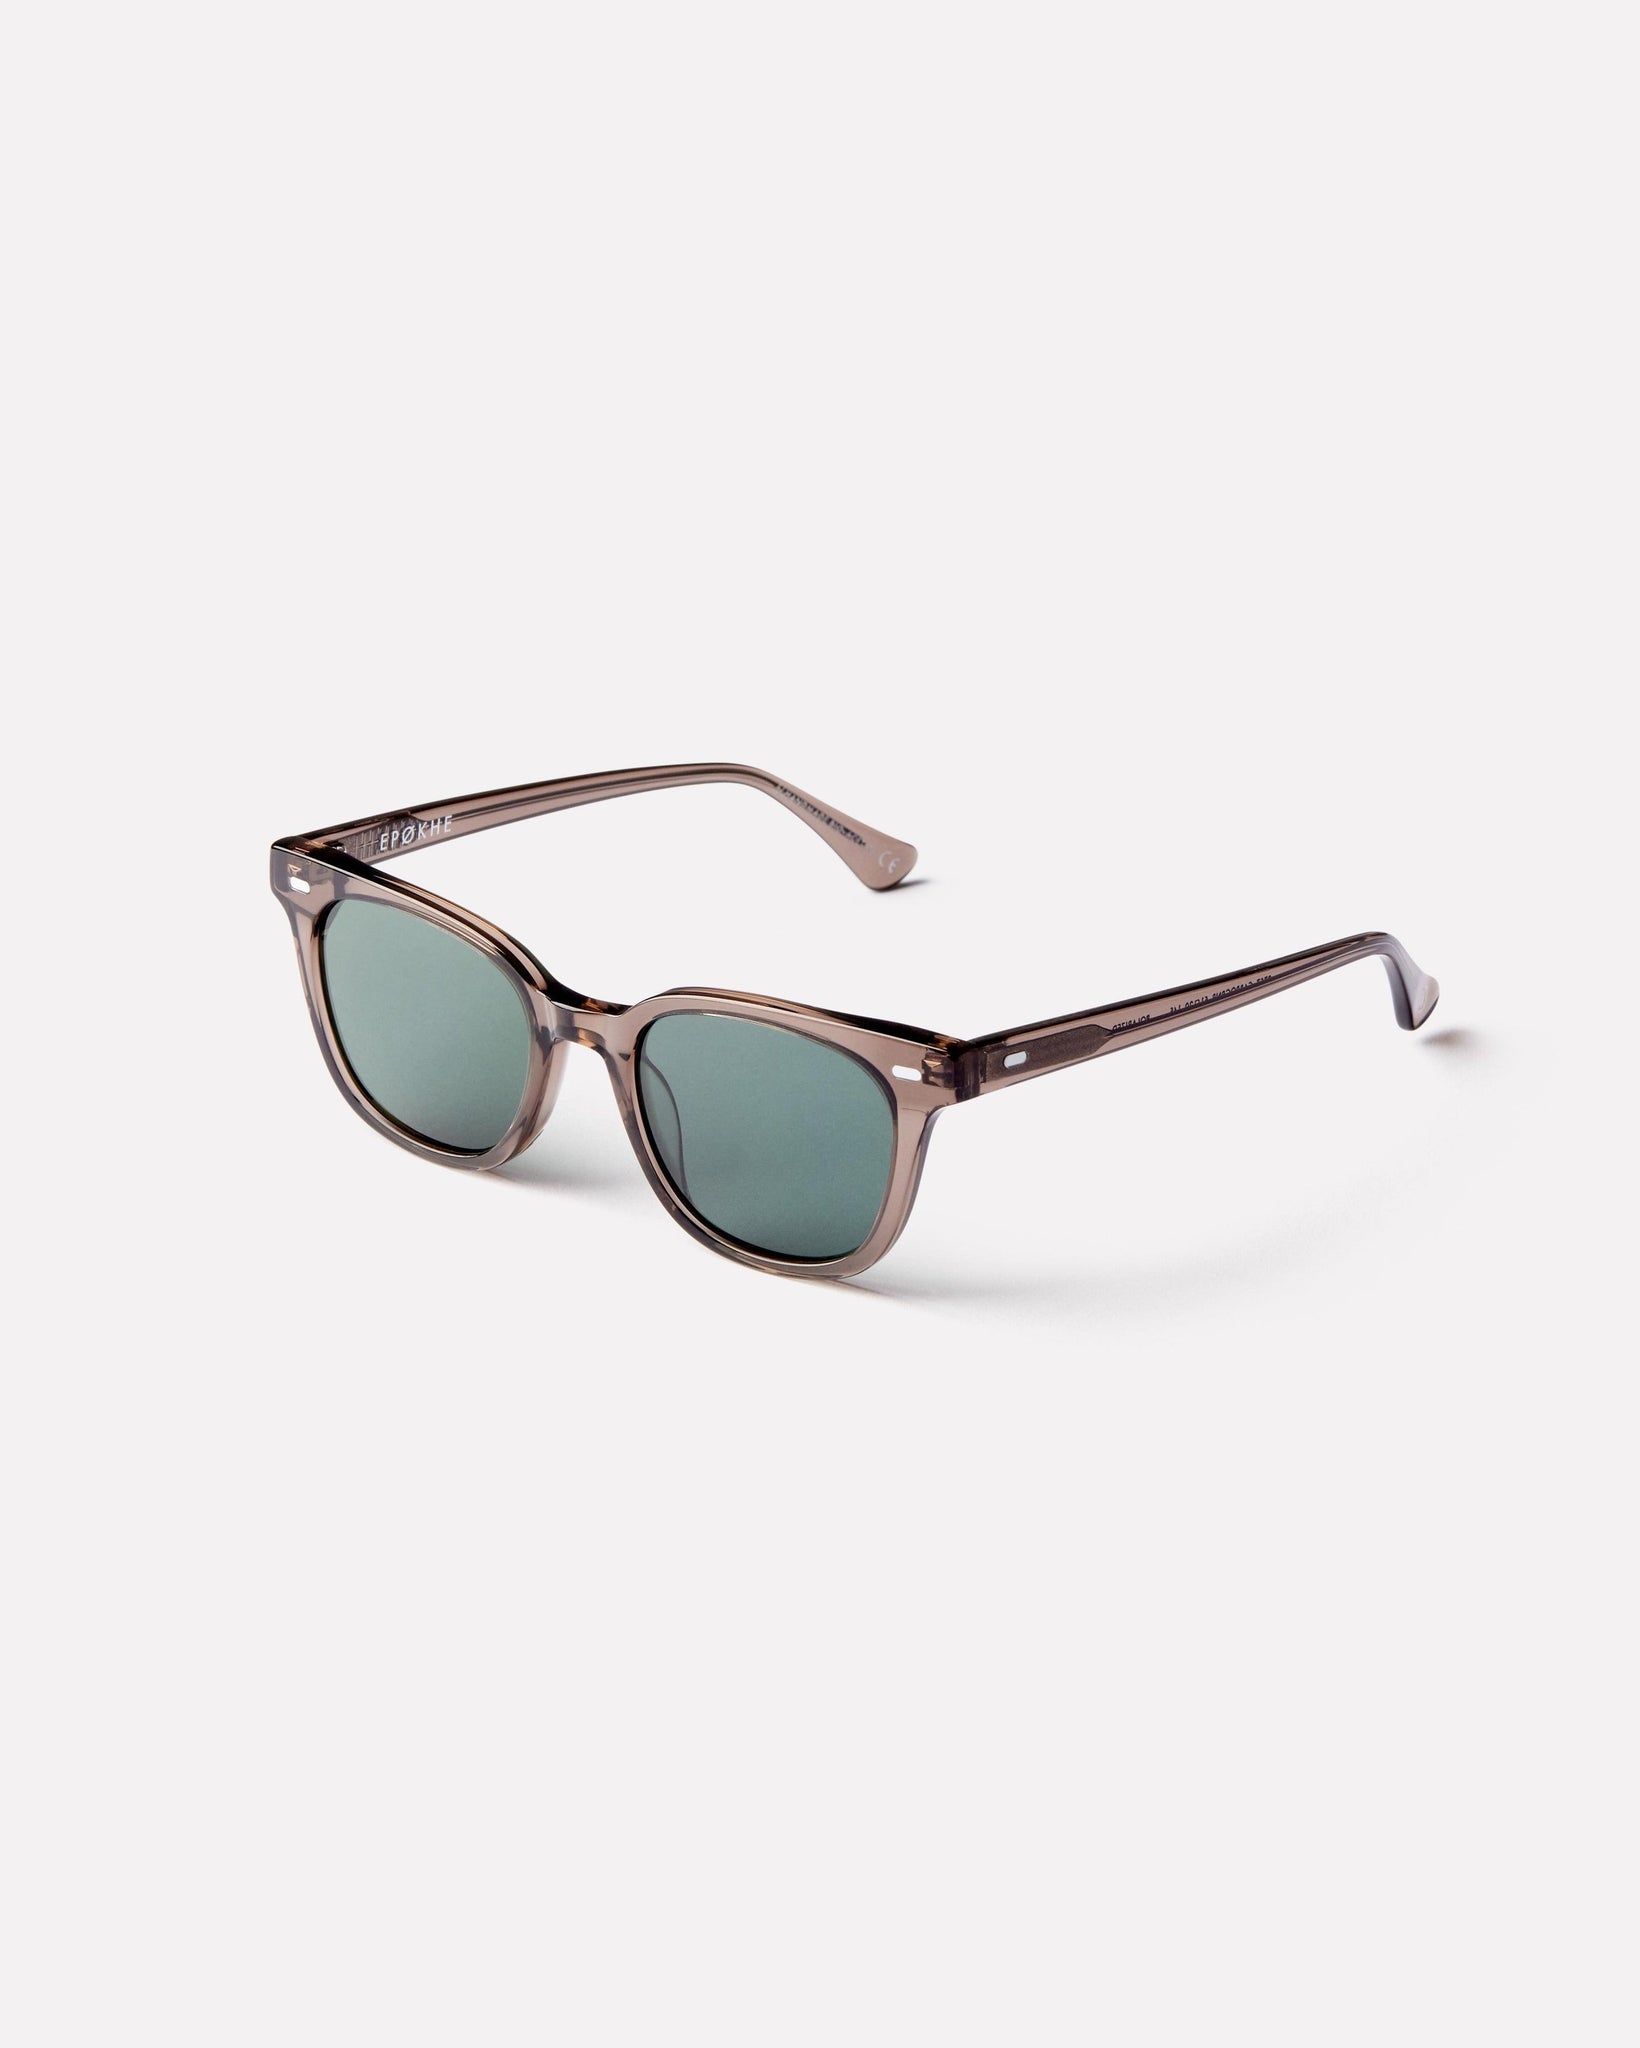 Kino - Carbon Polished / Green Polarized - Sunglasses - EPOKHE EYEWEAR